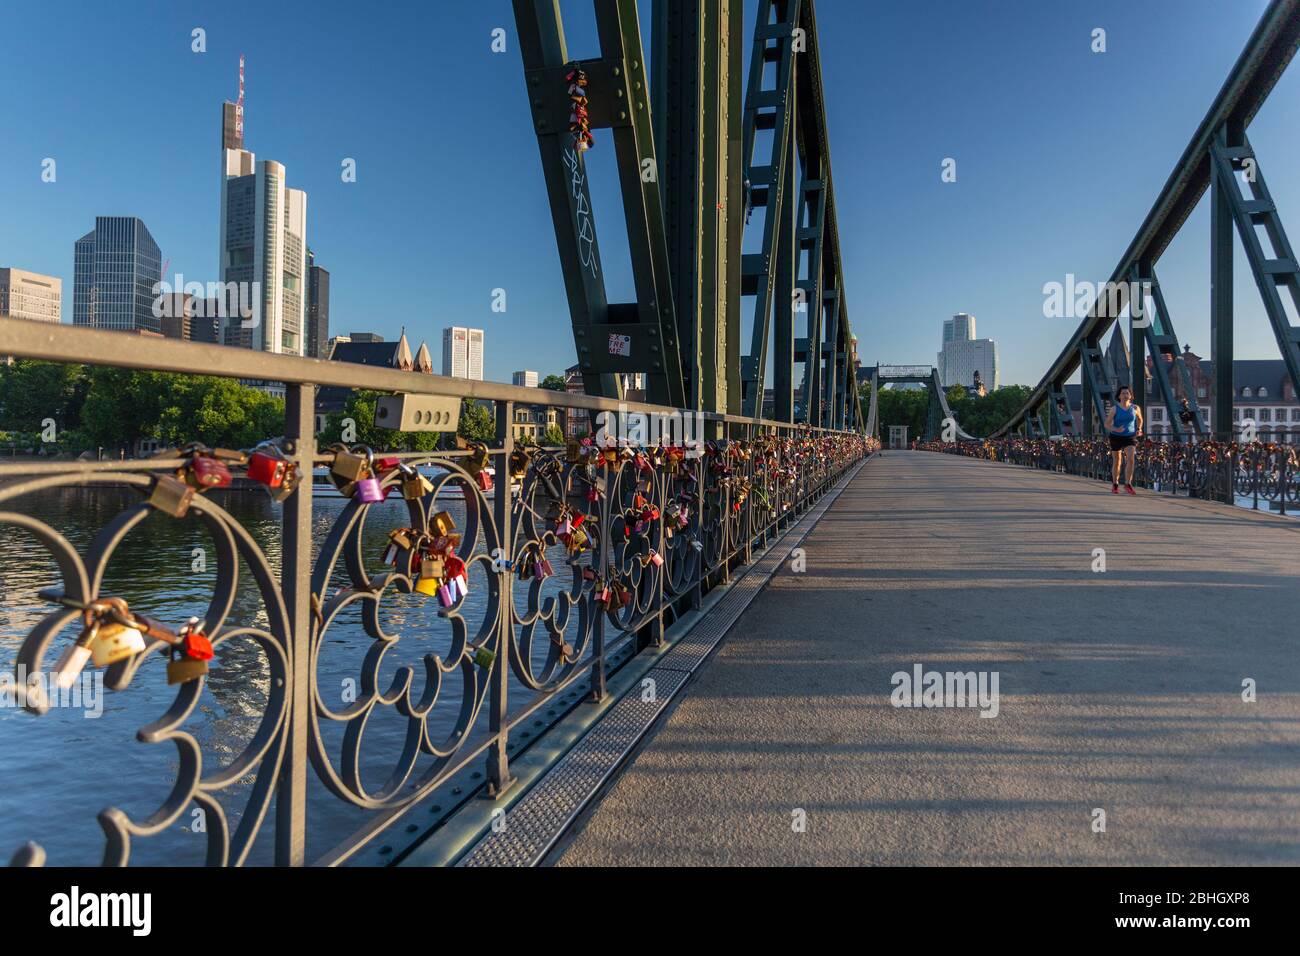 Un jogger en travers de Eiserner Steg pont de fer, à l'aube avec l'horizon de la ville de Francfort en toile affectueusement appelé love locks bridge Banque D'Images